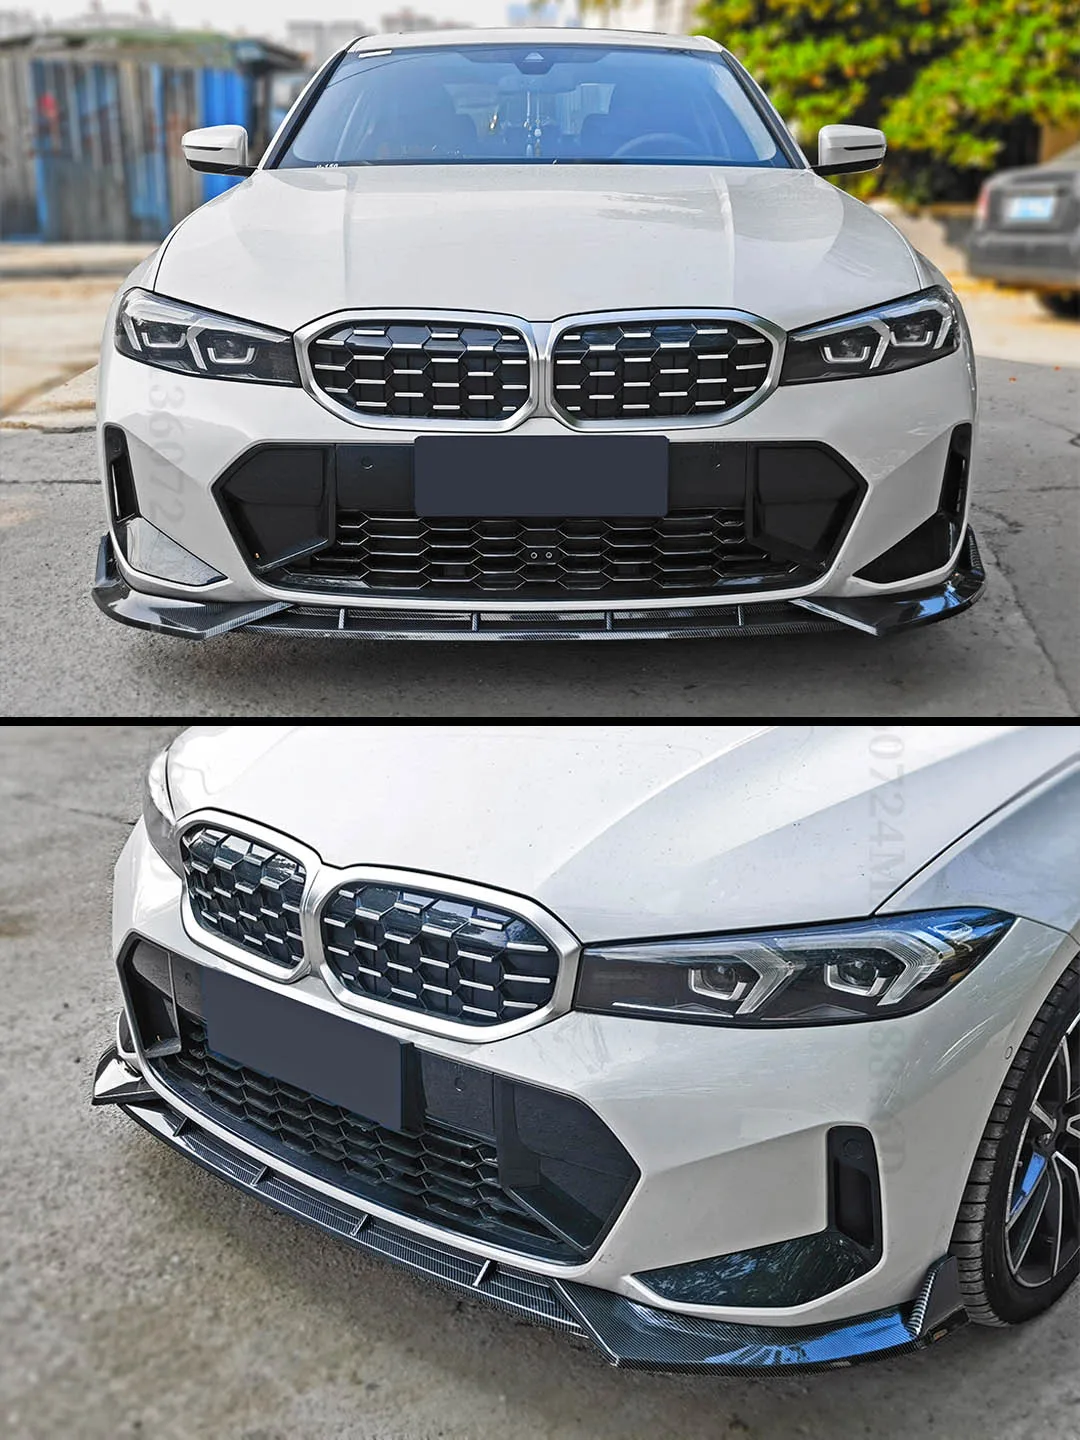 Front stoßstange Lippen splitter Luft damm Deflektor Verkleidung für BMW  G20 G21 3er 330i 320d m340i Touring Xdrive Tuning Zubehör - AliExpress